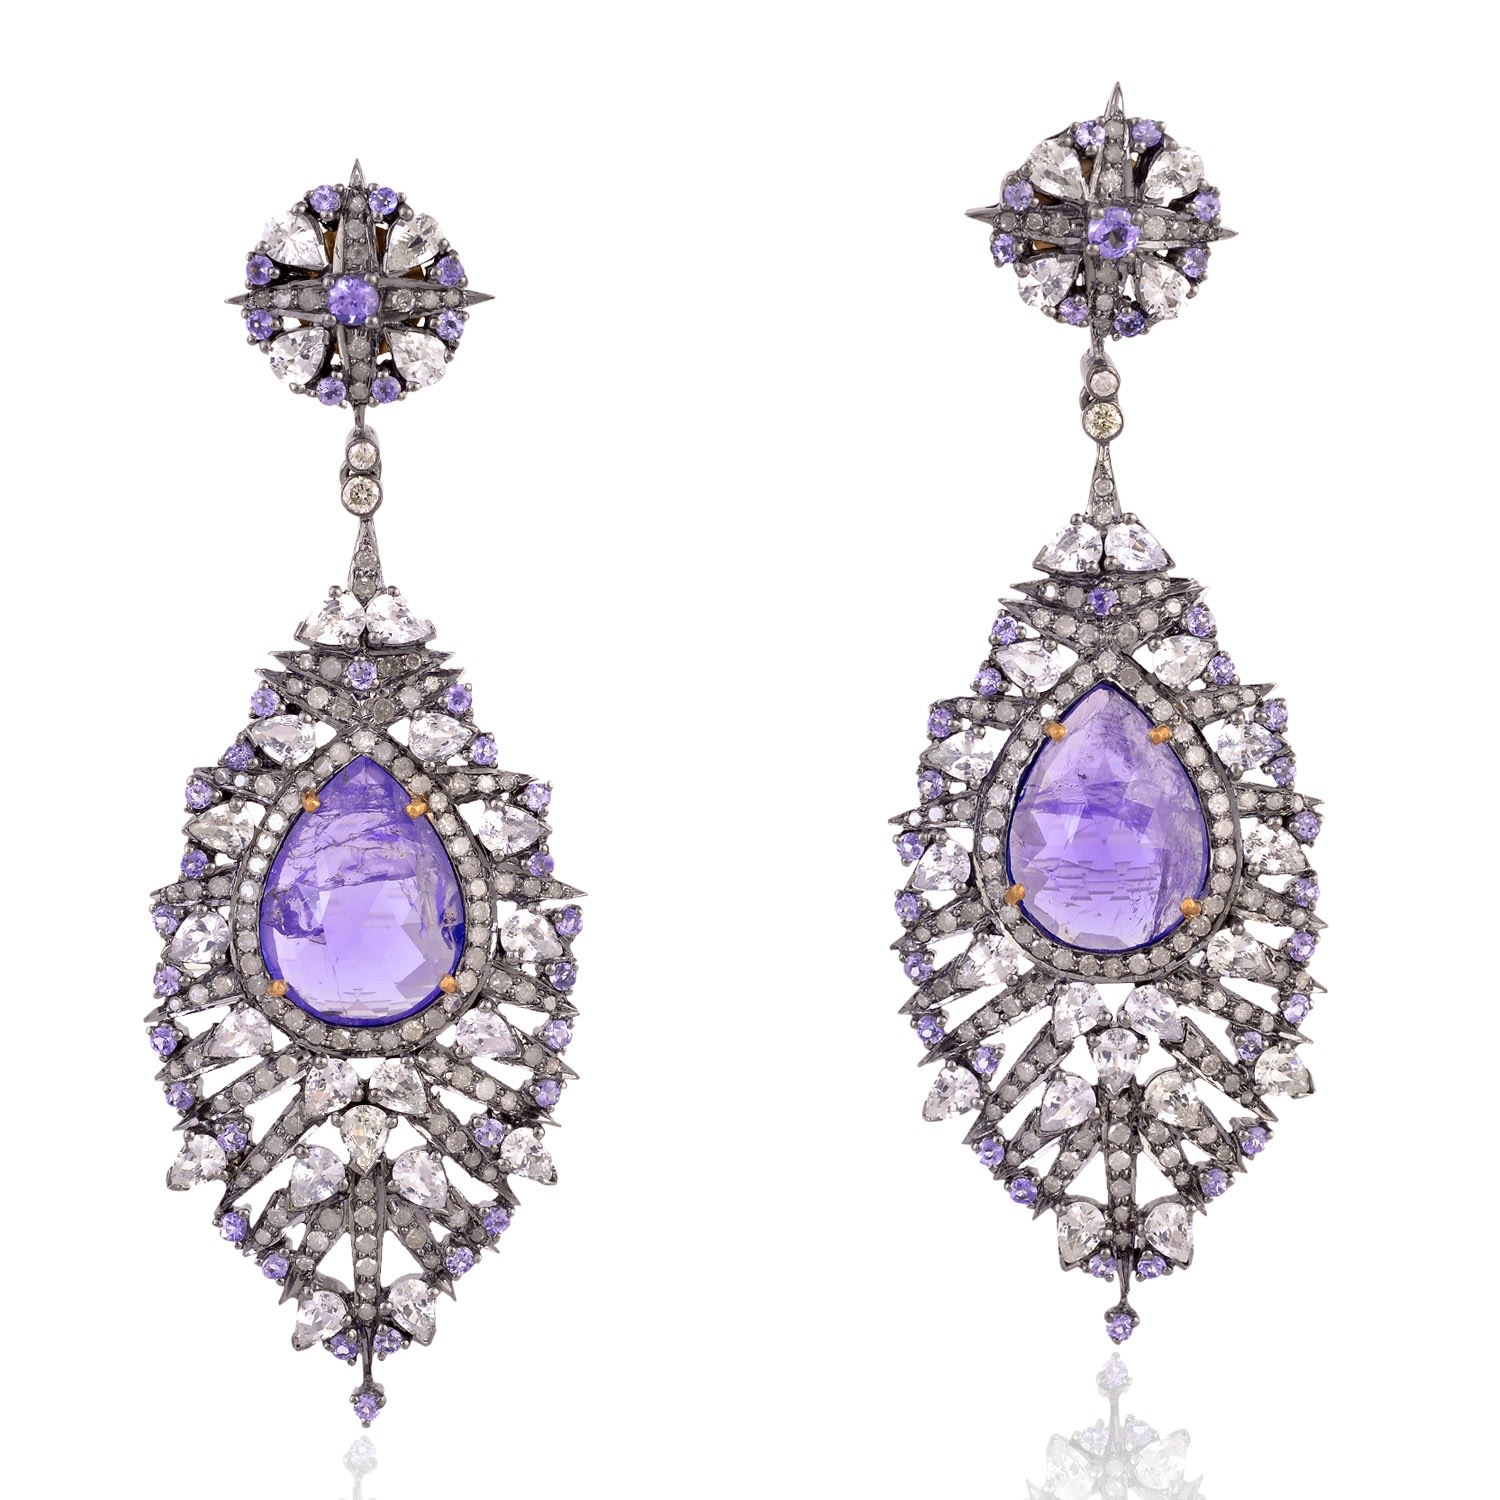 Women’s White / Pink / Purple Dangle Earrings Sapphire Diamond 925 Sterling Silver 18K Gold Jewelry Artisan